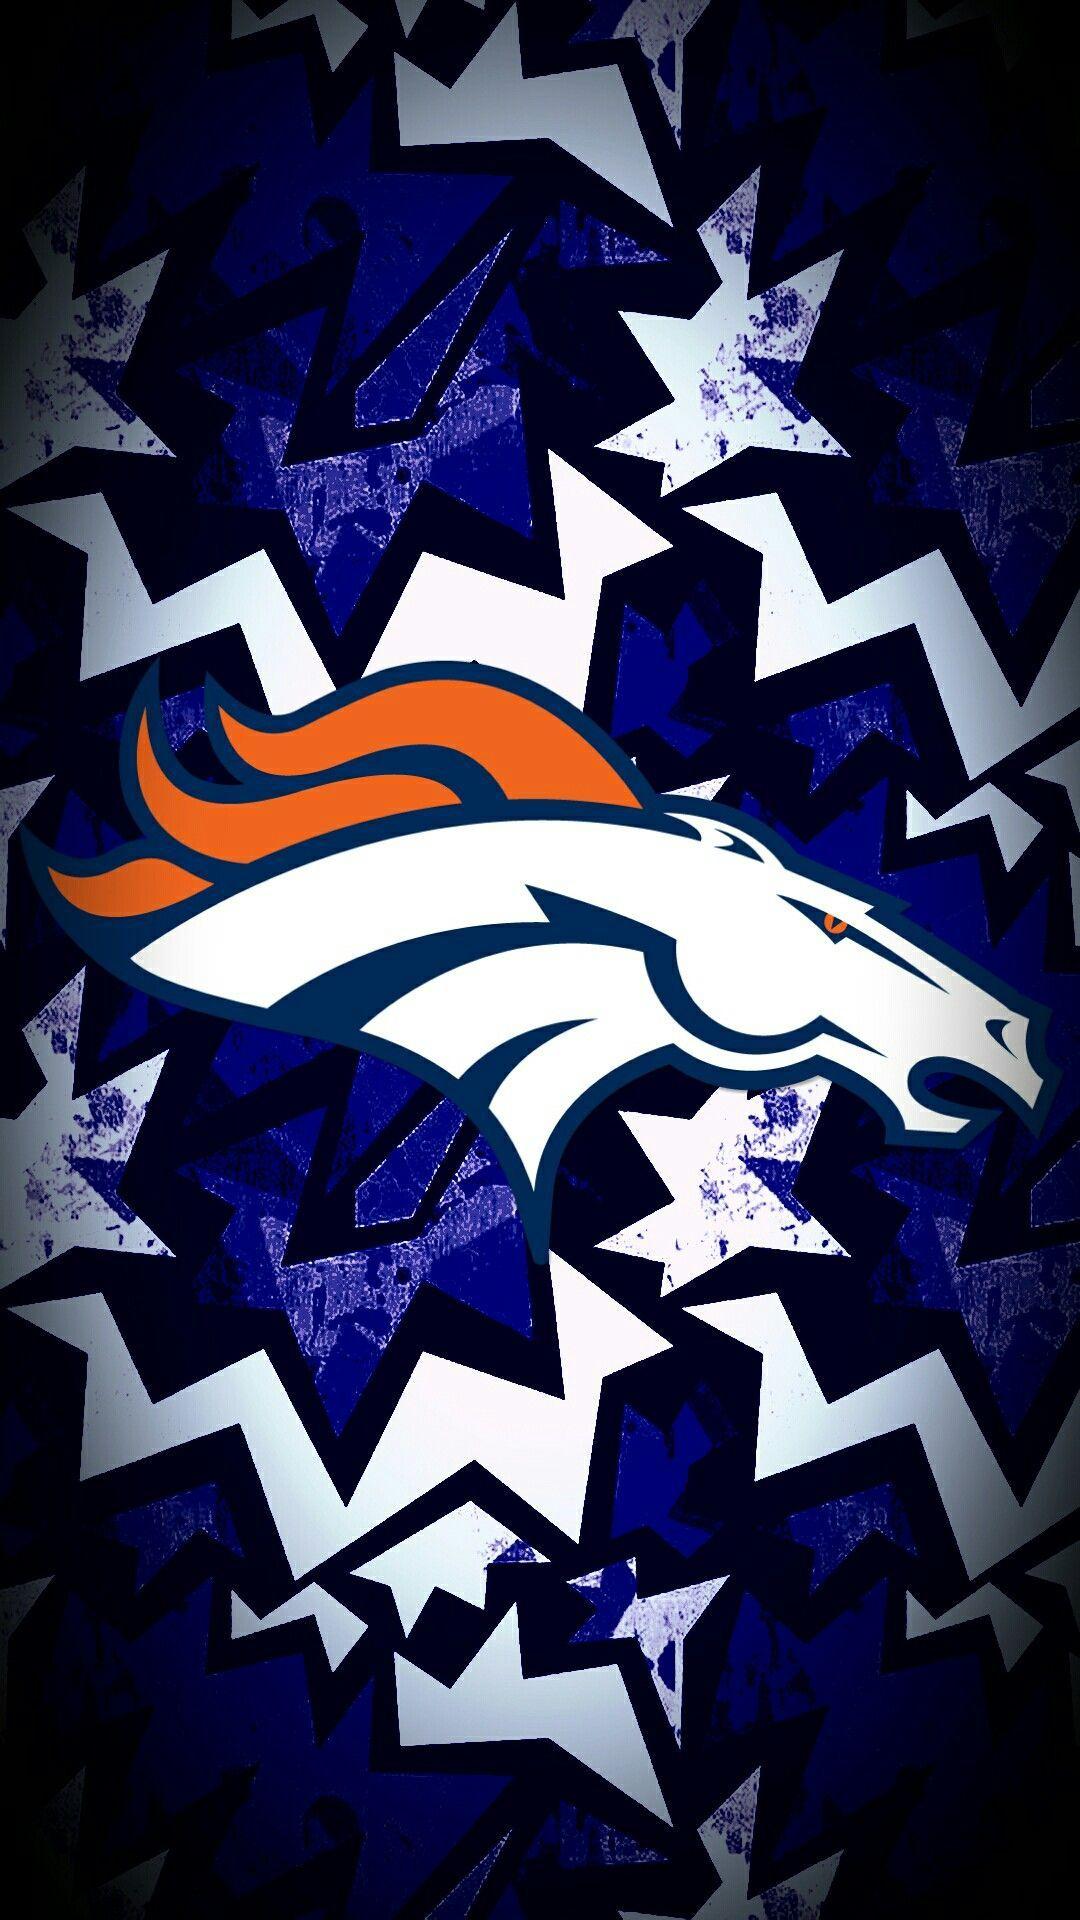 Denver Broncos Wallpapers - Top Free Denver Broncos Backgrounds ...